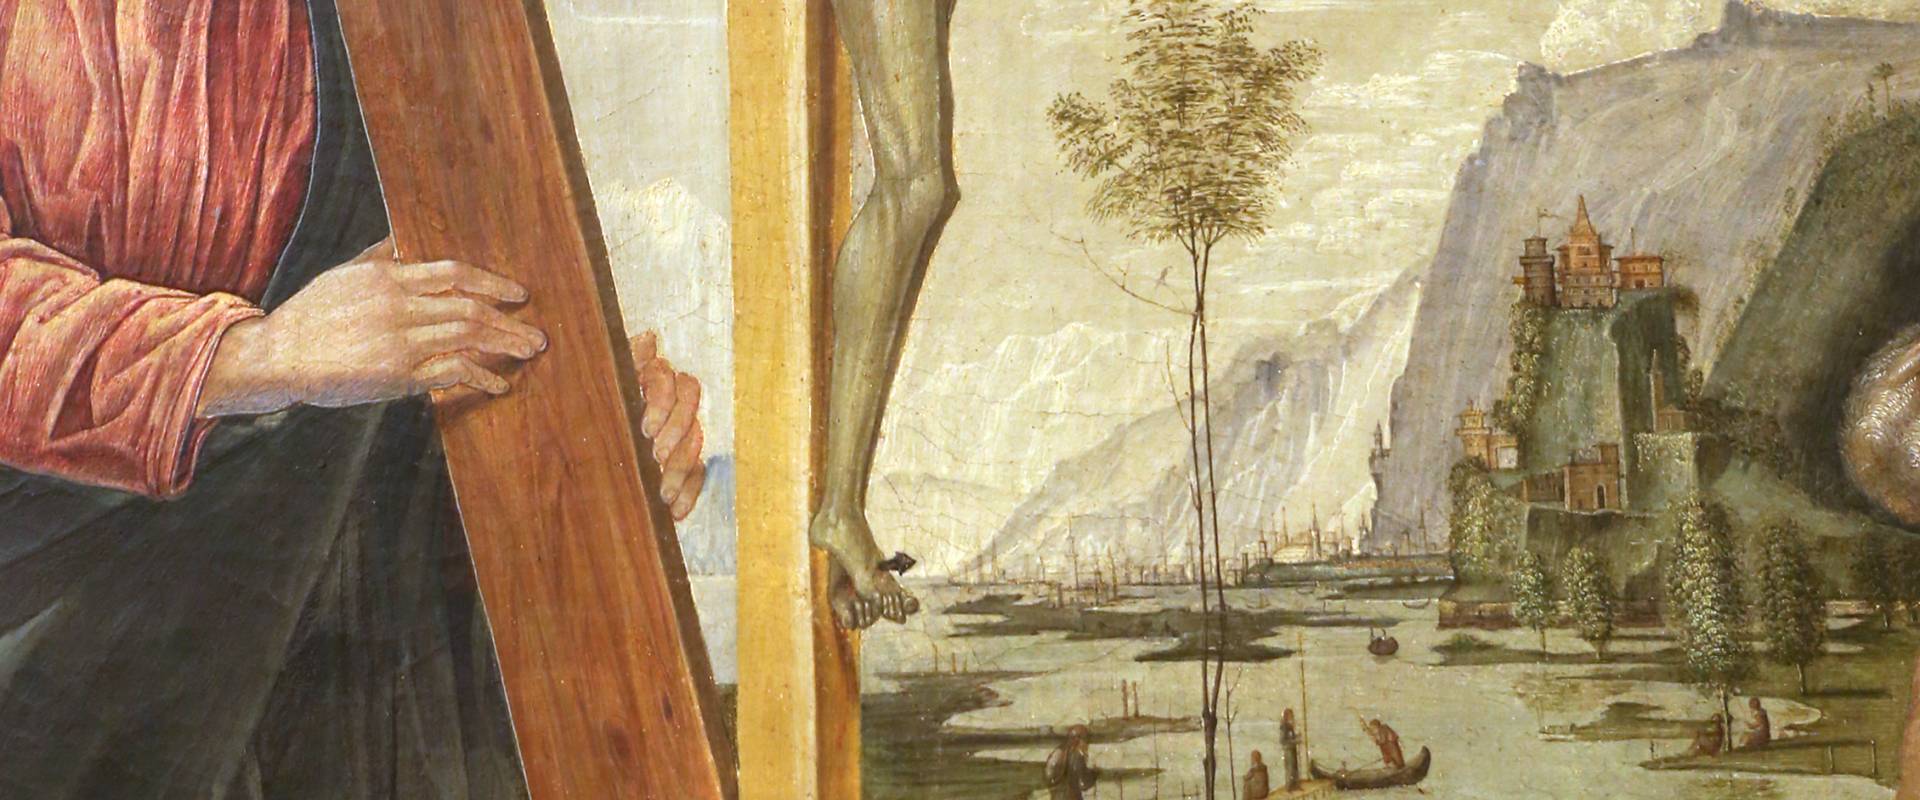 Bernardo parentino, cristo portacroce tra i ss. girolamo e agostino, 1492-96 ca. 03 photo by Sailko